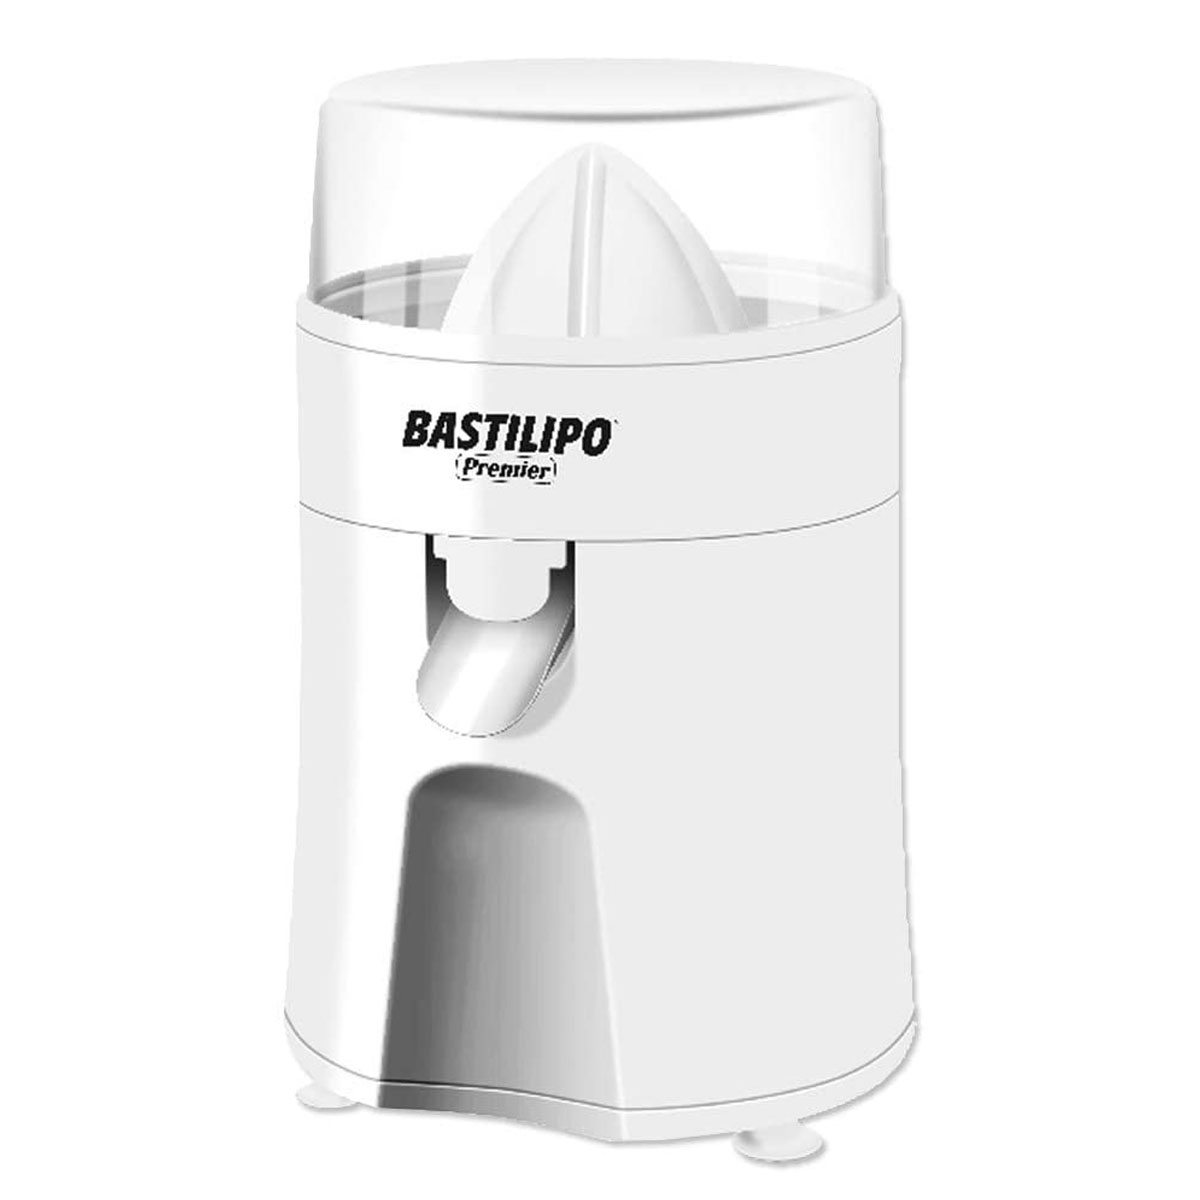 Exprimidor Bastilipo Ex85b 85w manual para citricos de potencia. electrico bast7470